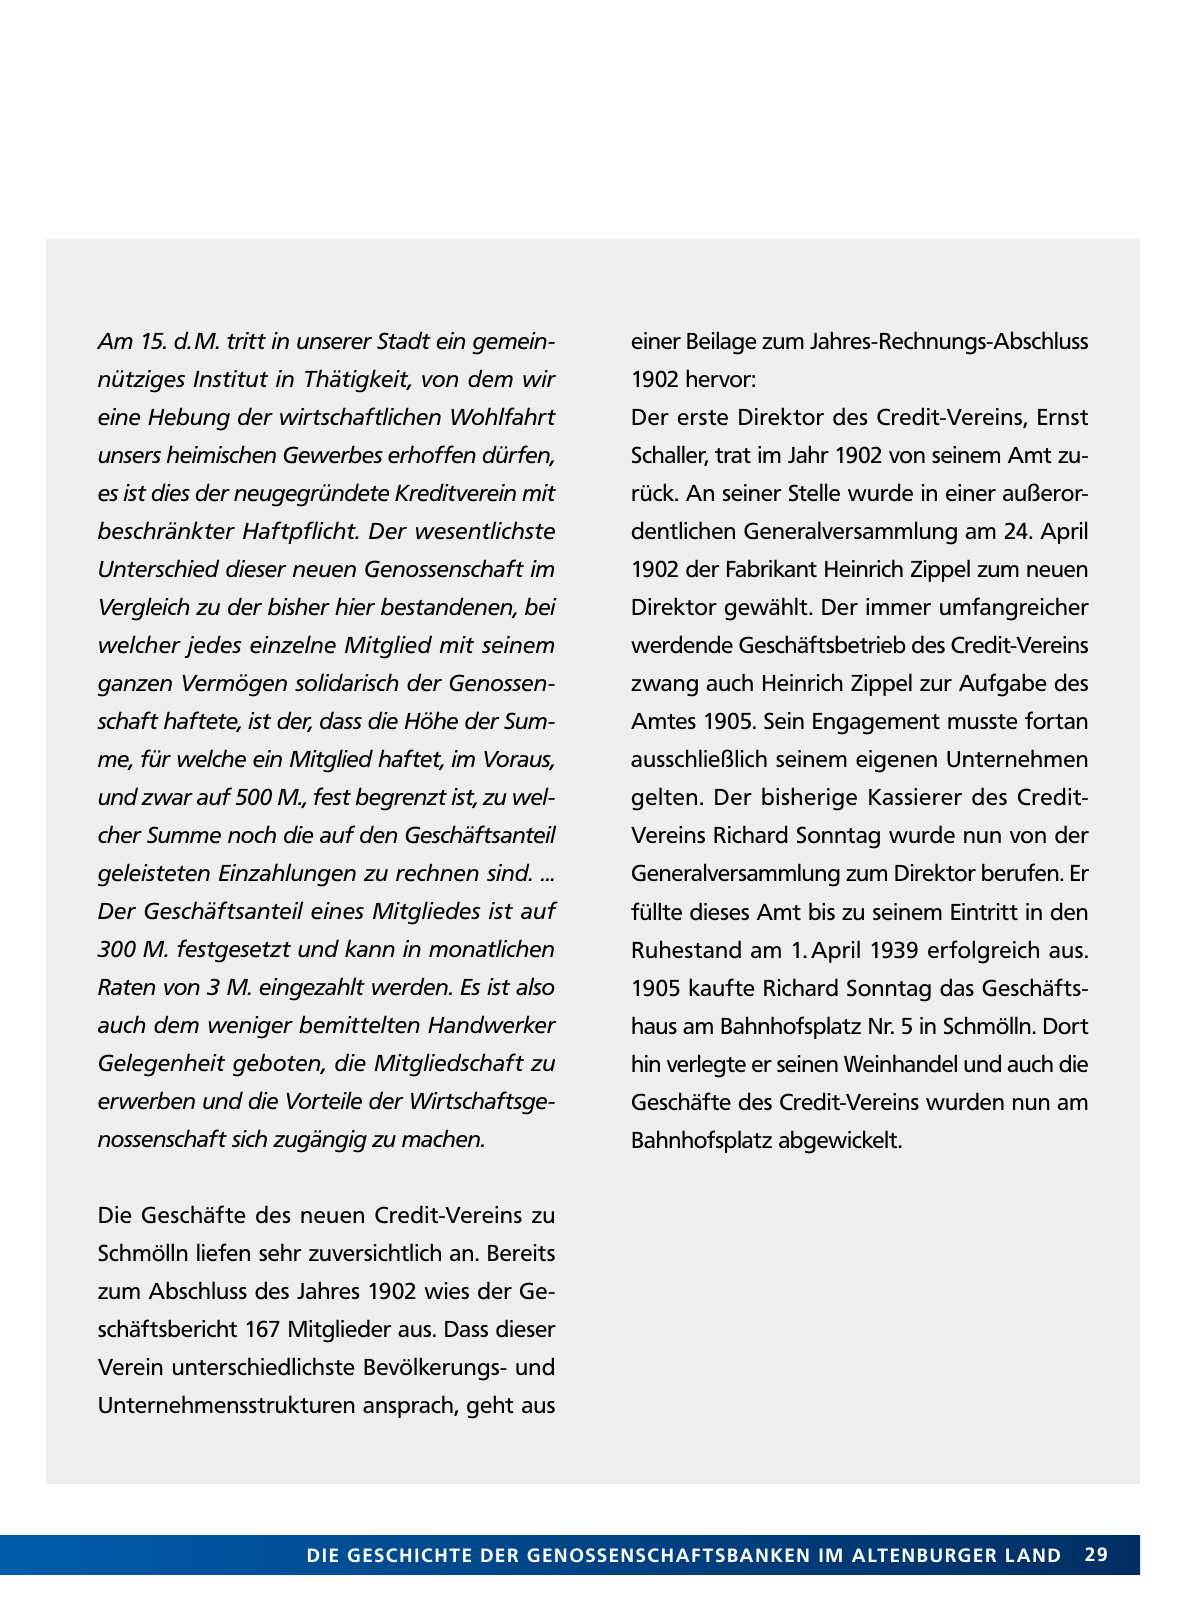 Vorschau Von der Idee, sich selbst zu helfen – 150 Jahre genossenschaftliches Bankwesen im Altenburger Land Seite 29